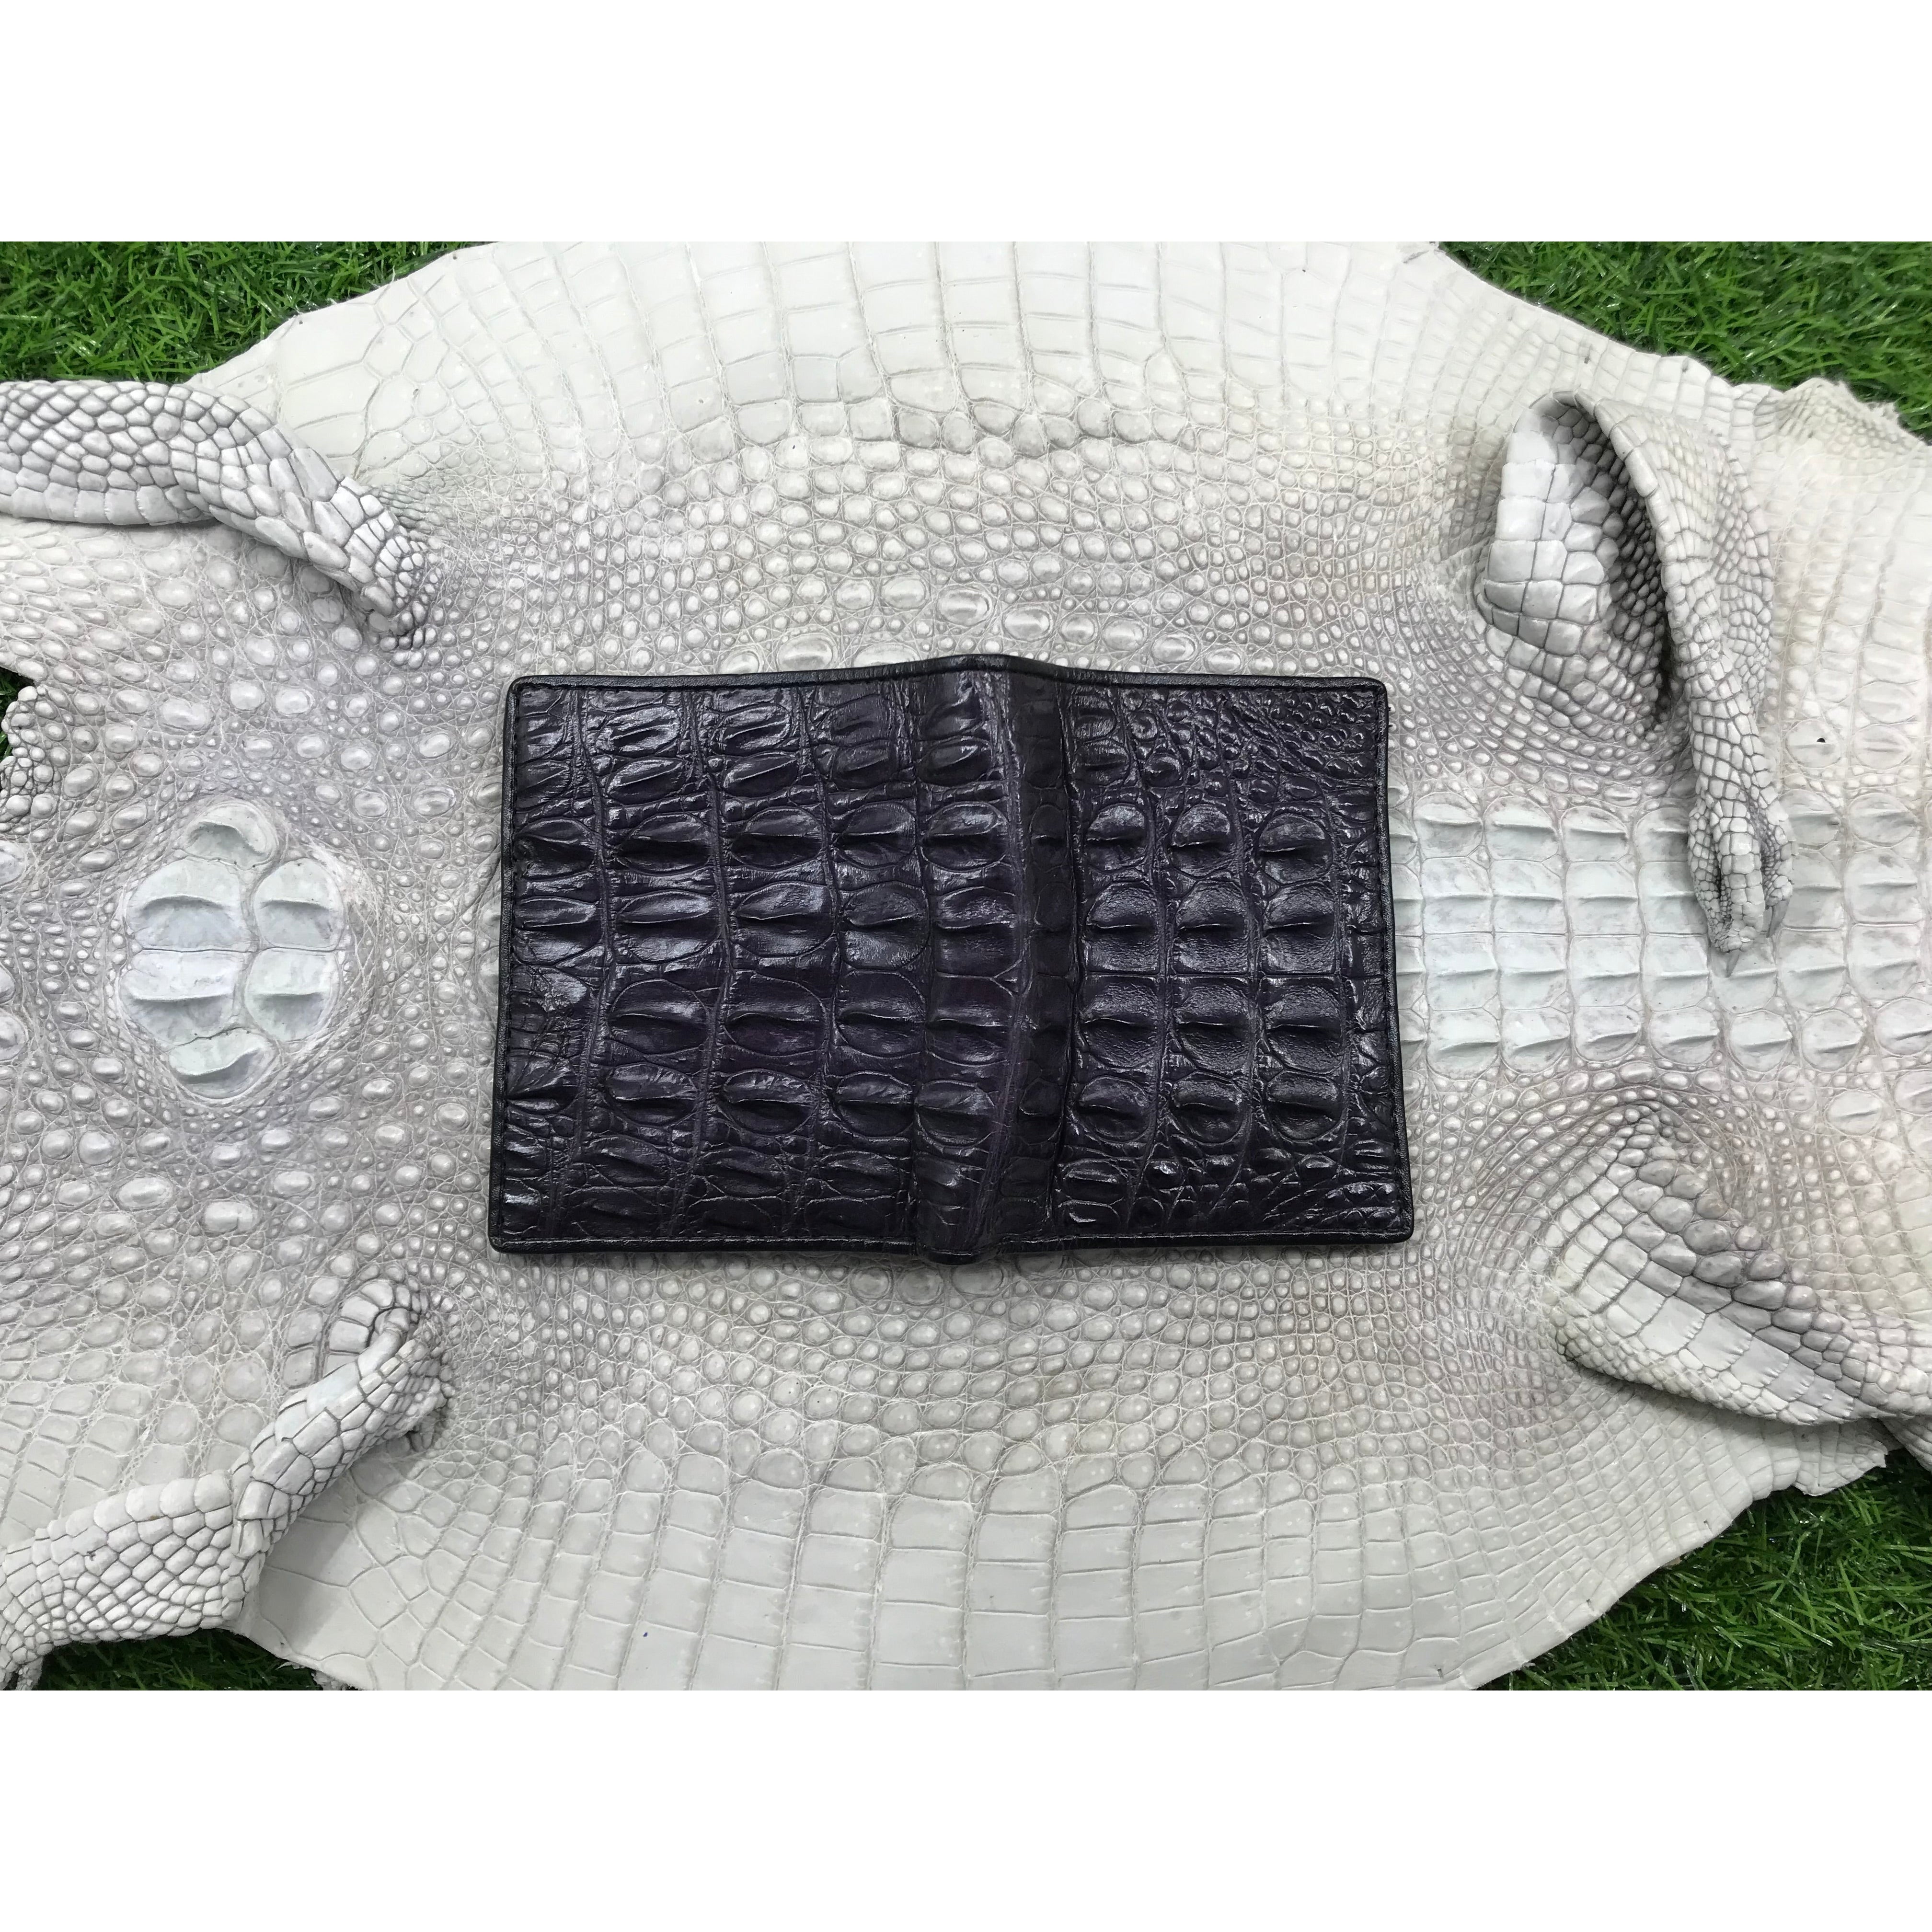 Black Alligator Horn Back Skin Bifold Vertical Wallet For Men | Handmade Crocodile Leather Wallet RFID Blocking | VL5712 - Vinacreations